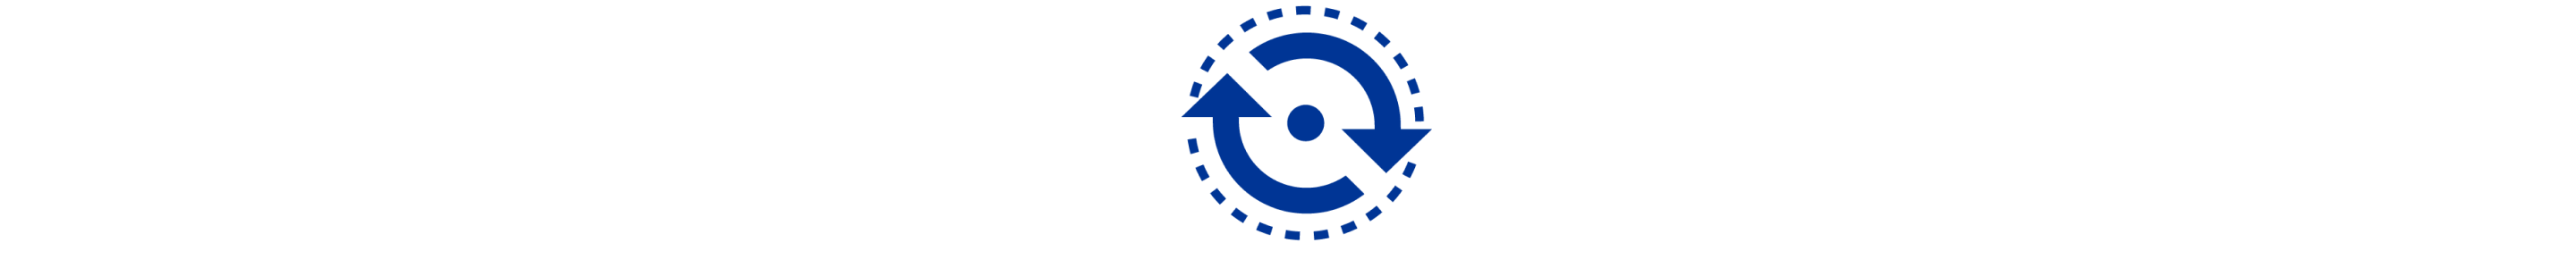 Un'icona blu che mostra linee tratteggiate e 2 frecce che circondano un piccolo cerchio.